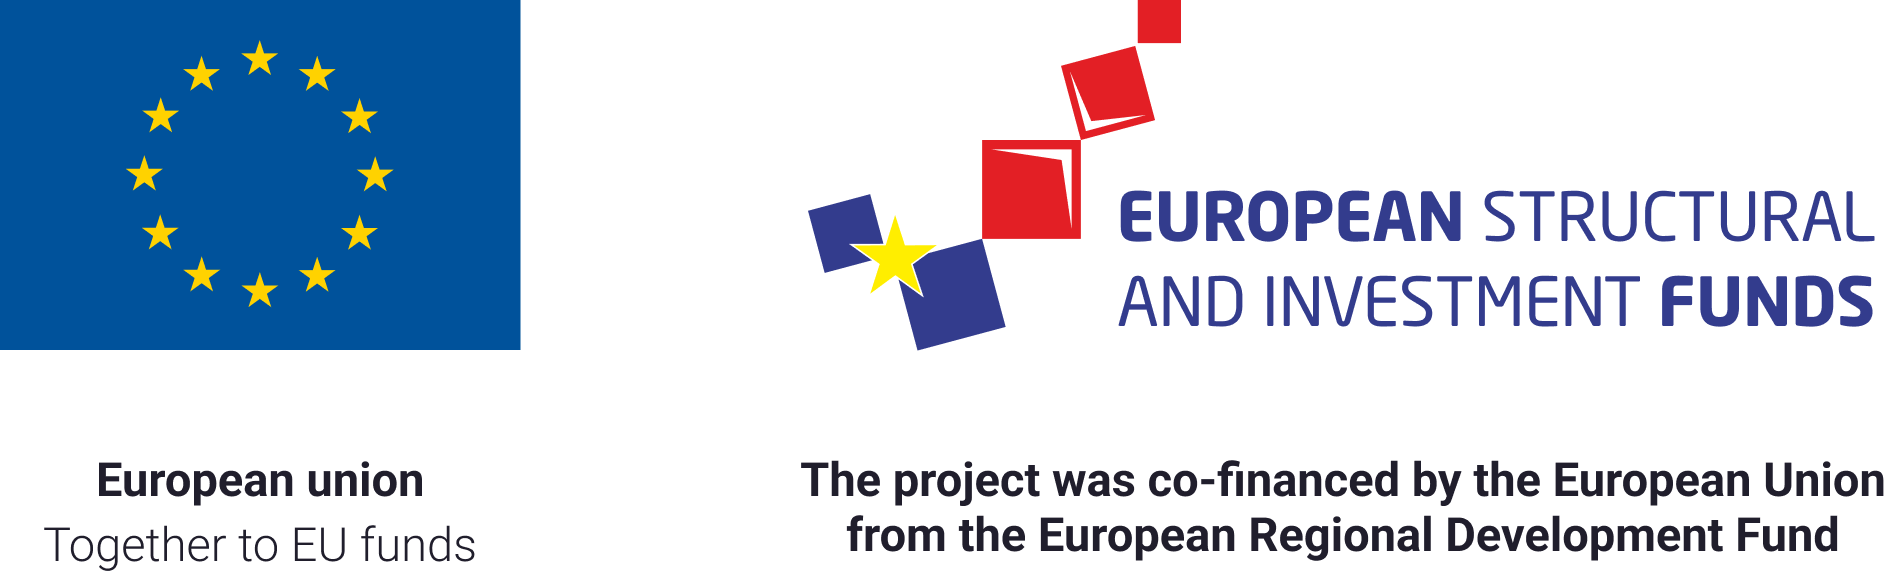 European union funds logotypes